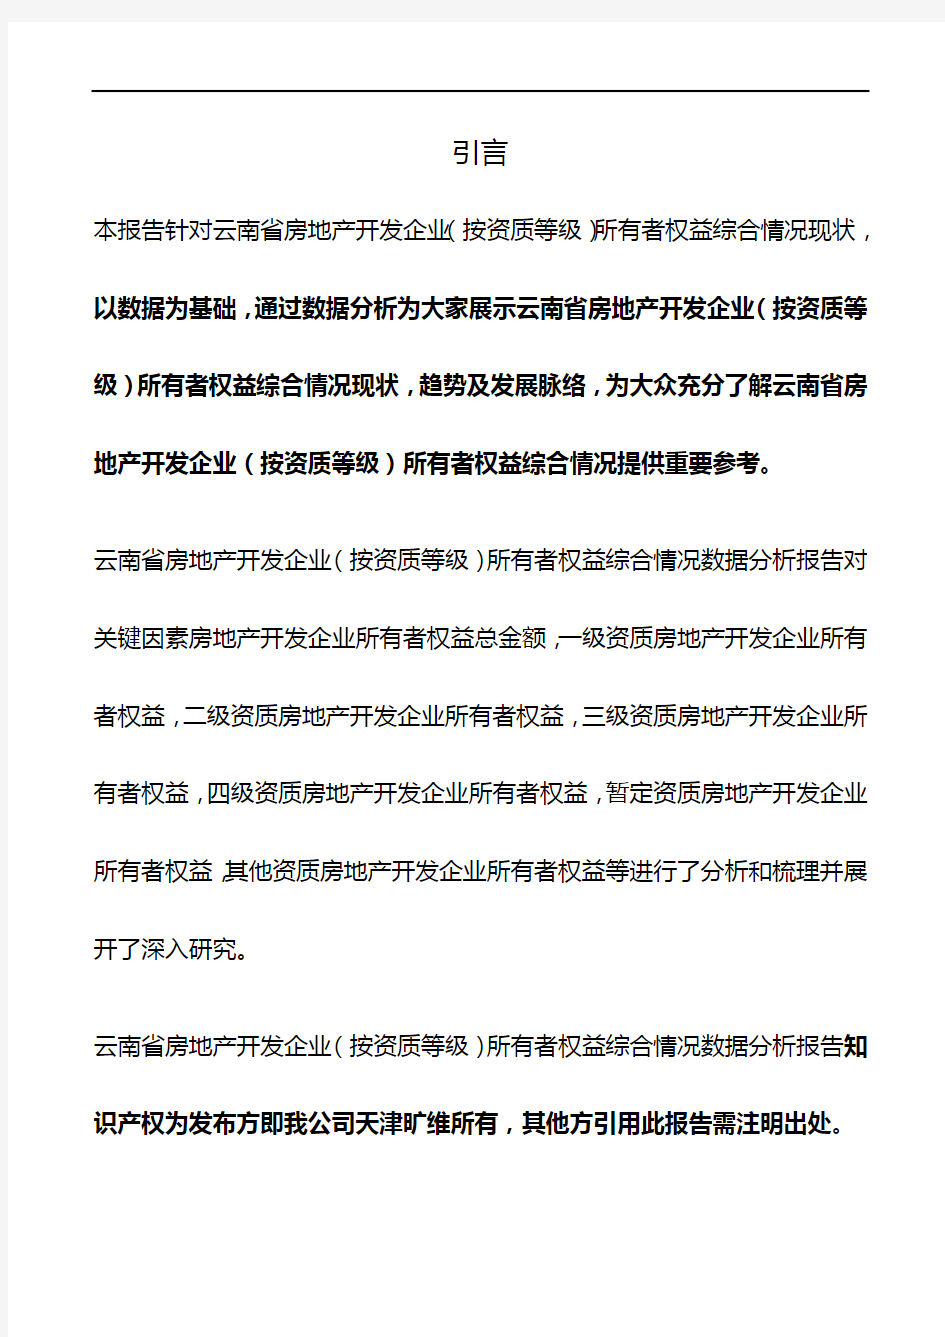 云南省房地产开发企业(按资质等级)所有者权益综合情况3年数据分析报告2019版